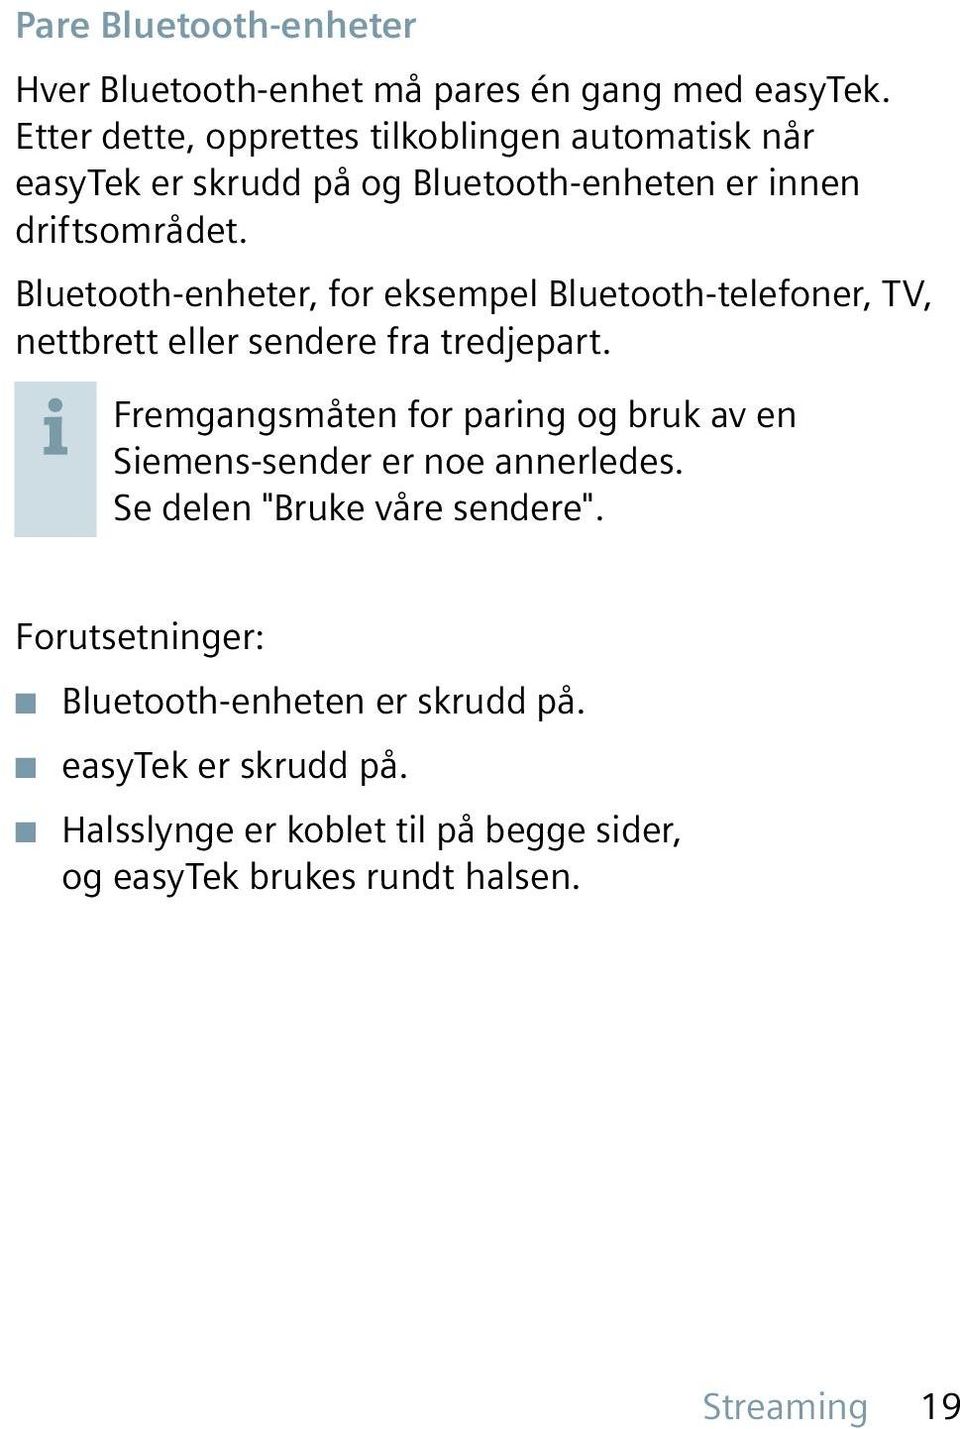 Bluetooth-enheter, for eksempel Bluetooth-telefoner, TV, nettbrett eller sendere fra tredjepart.